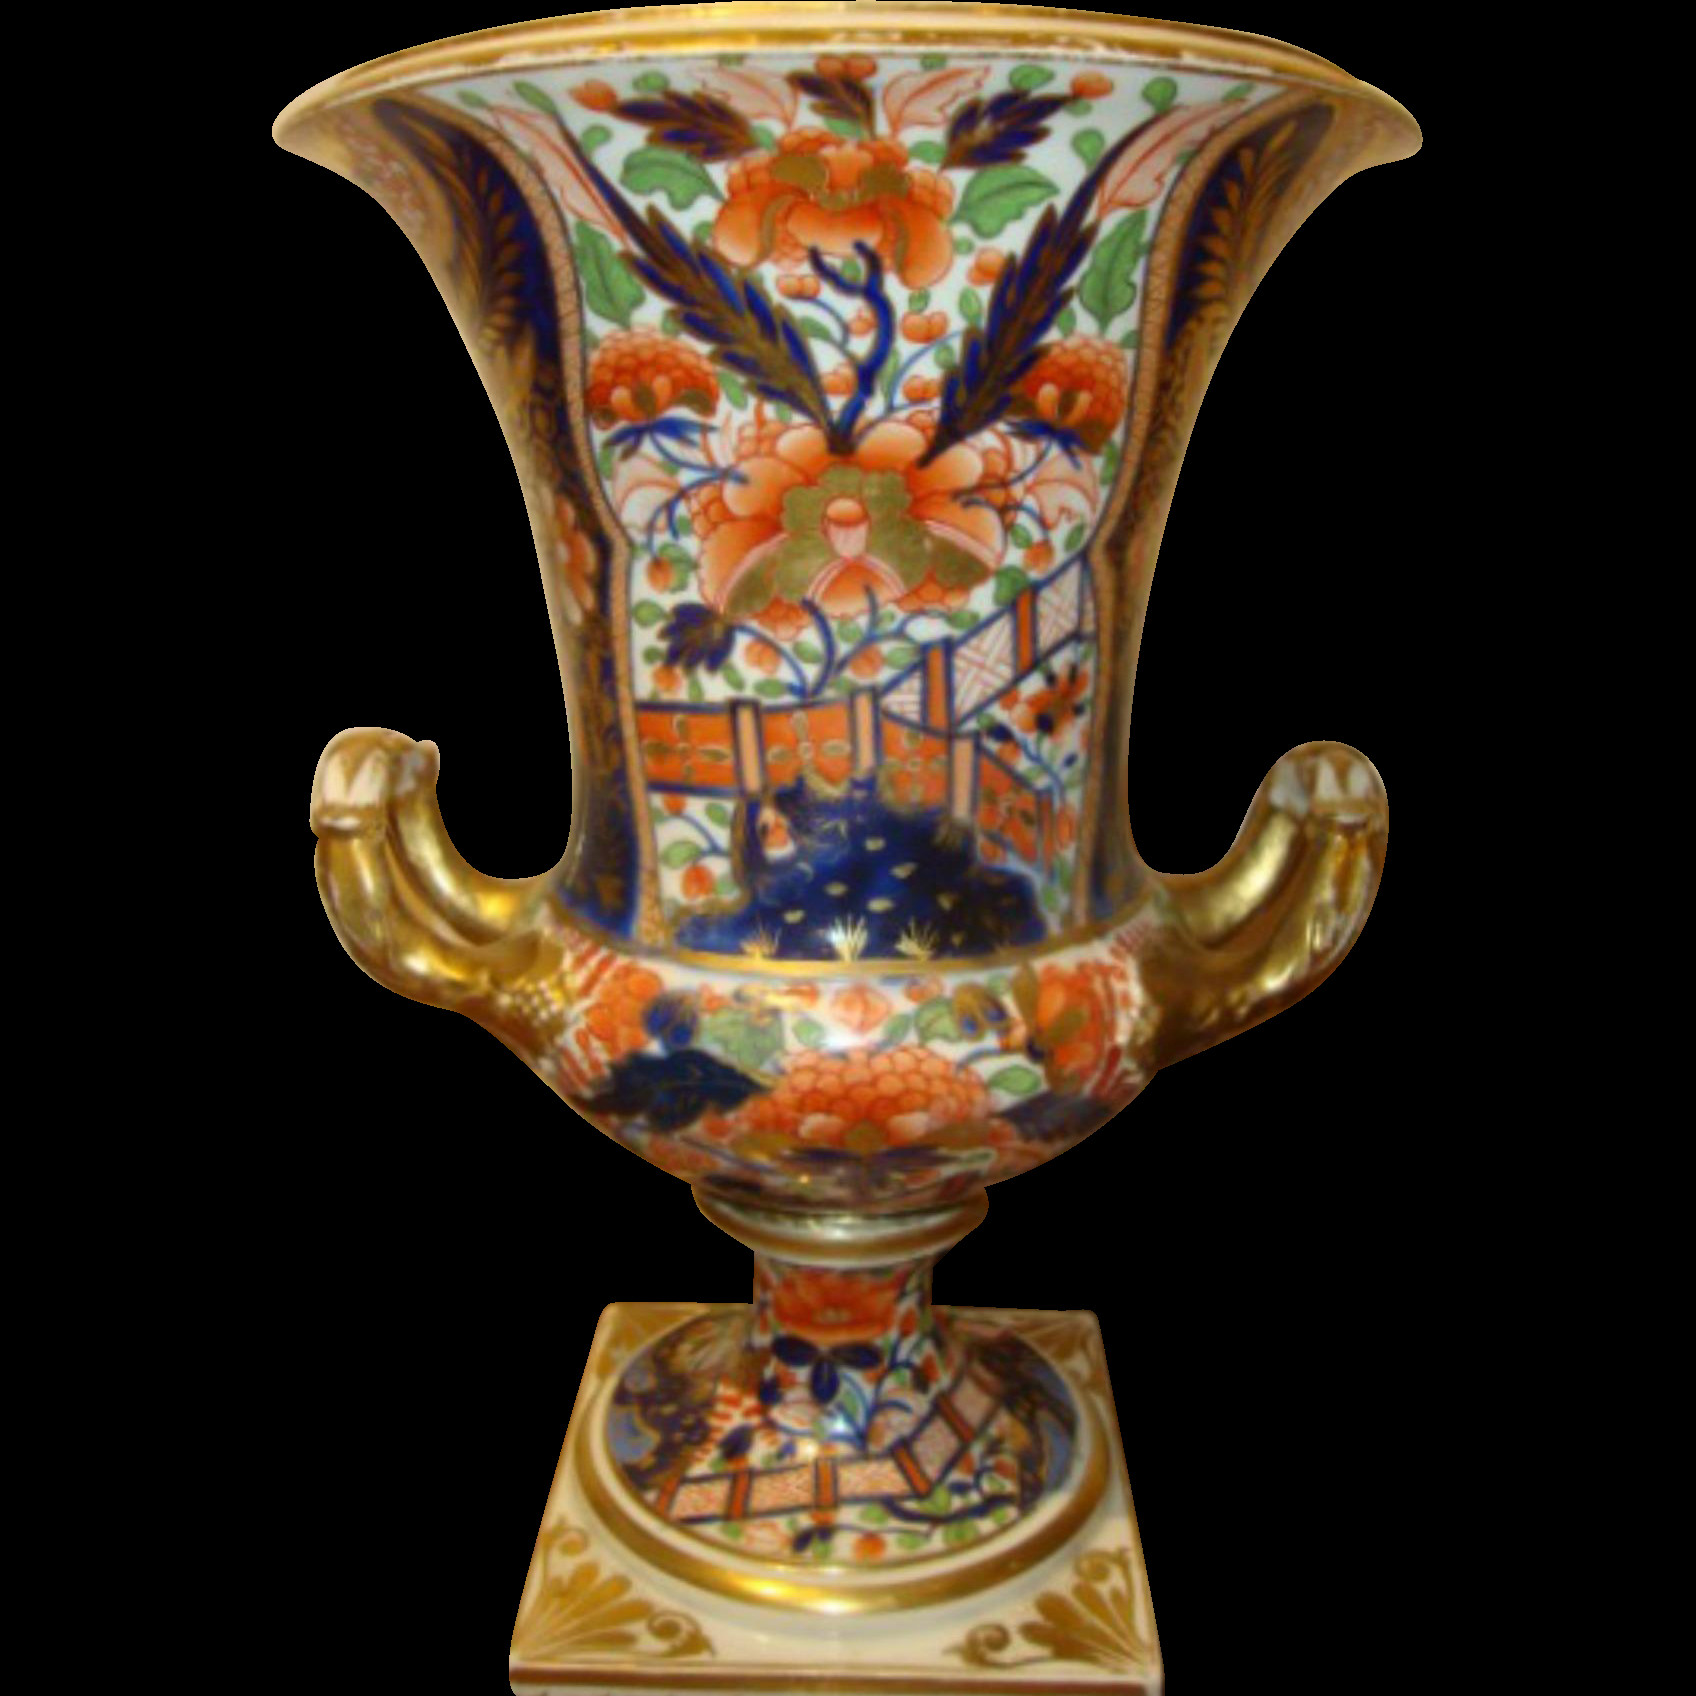 22 Cute Vintage Porcelain Vases 2024 free download vintage porcelain vases of antique english porcelain campagna shape vase derby porcelain intended for antique english porcelain campagna shape vase derby porcelain